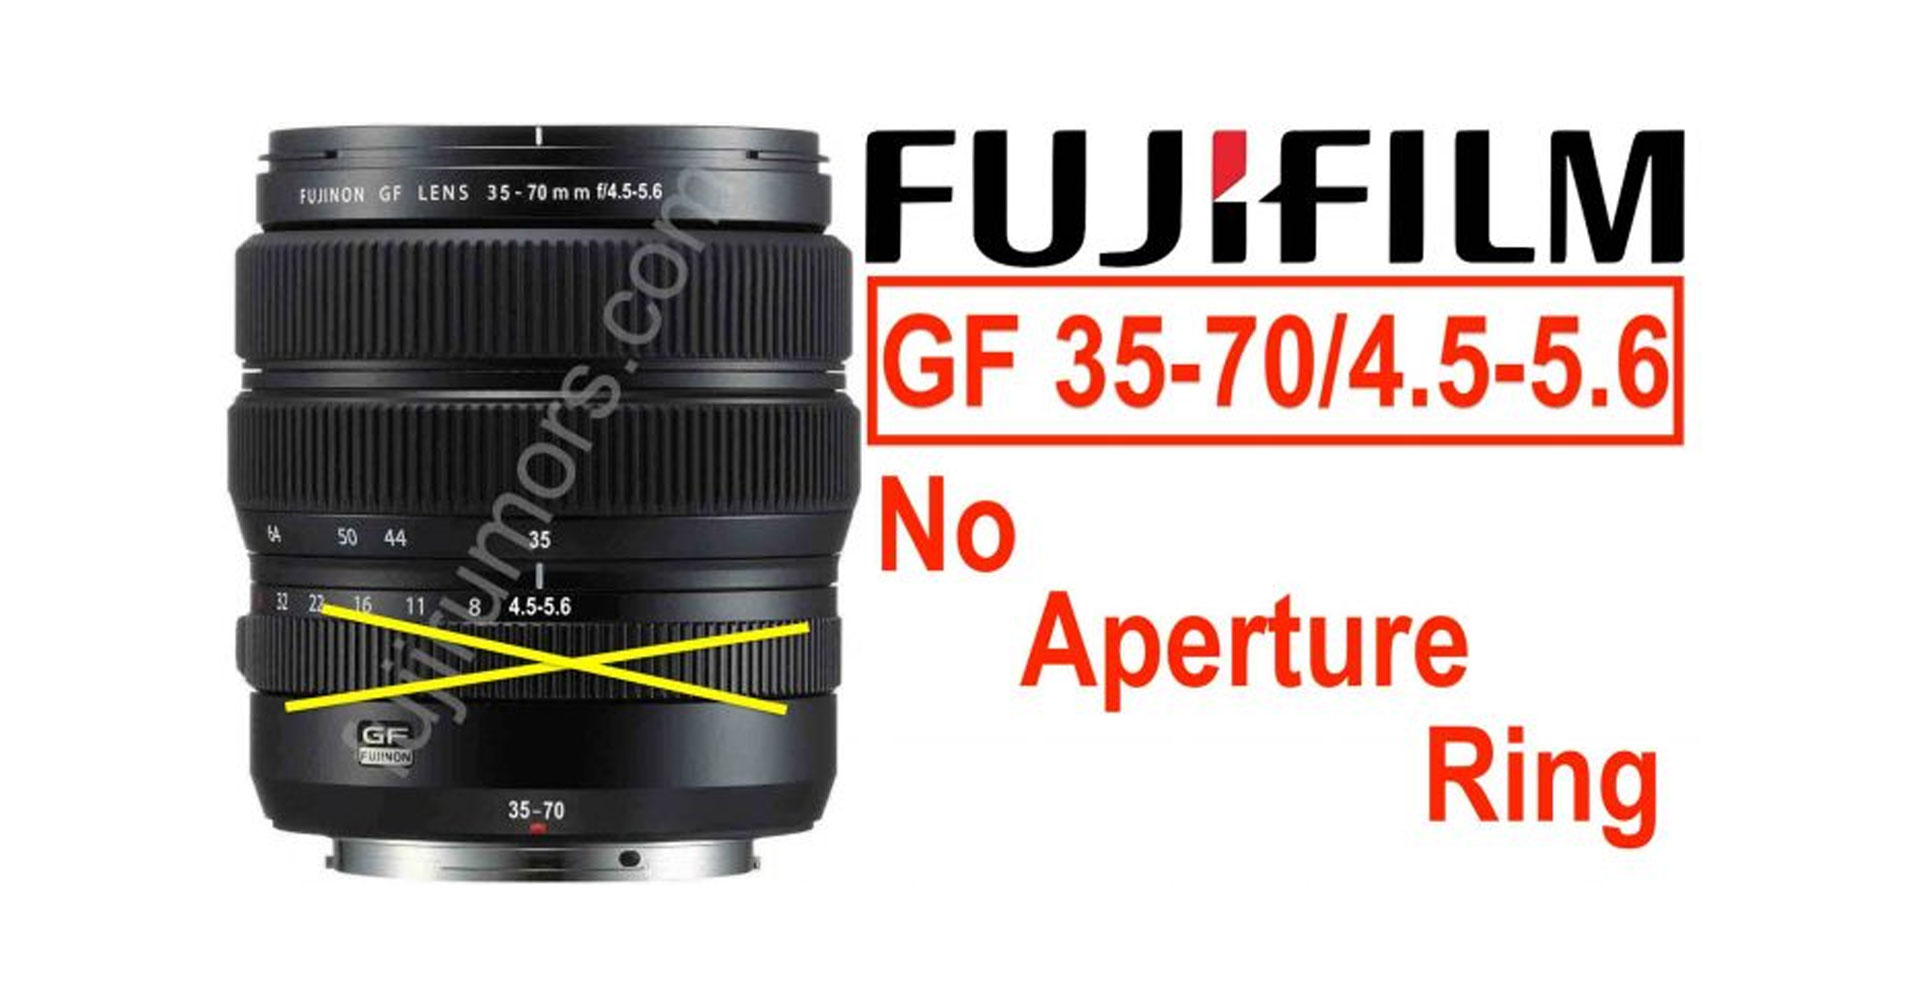 ลือ Fujinon GF 35-70mm f/4.5-5.6 จะไม่มีแหวนสำหรับปรับรูรับแสง!